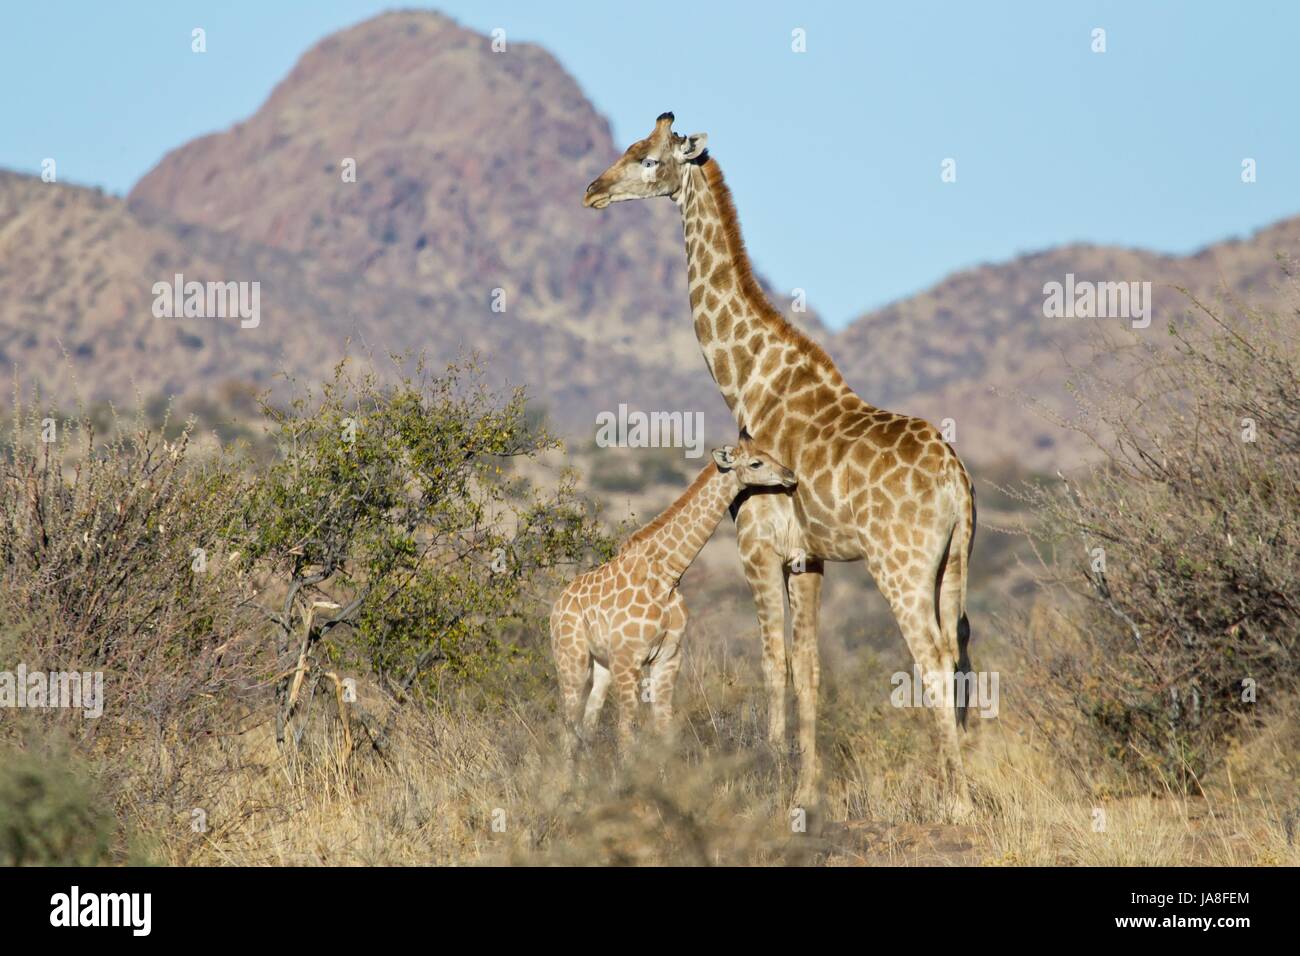 La giraffa, camminare, andare, andando, passeggiate, Edgewise, giovani, giovani, adulter, adulte, Foto Stock